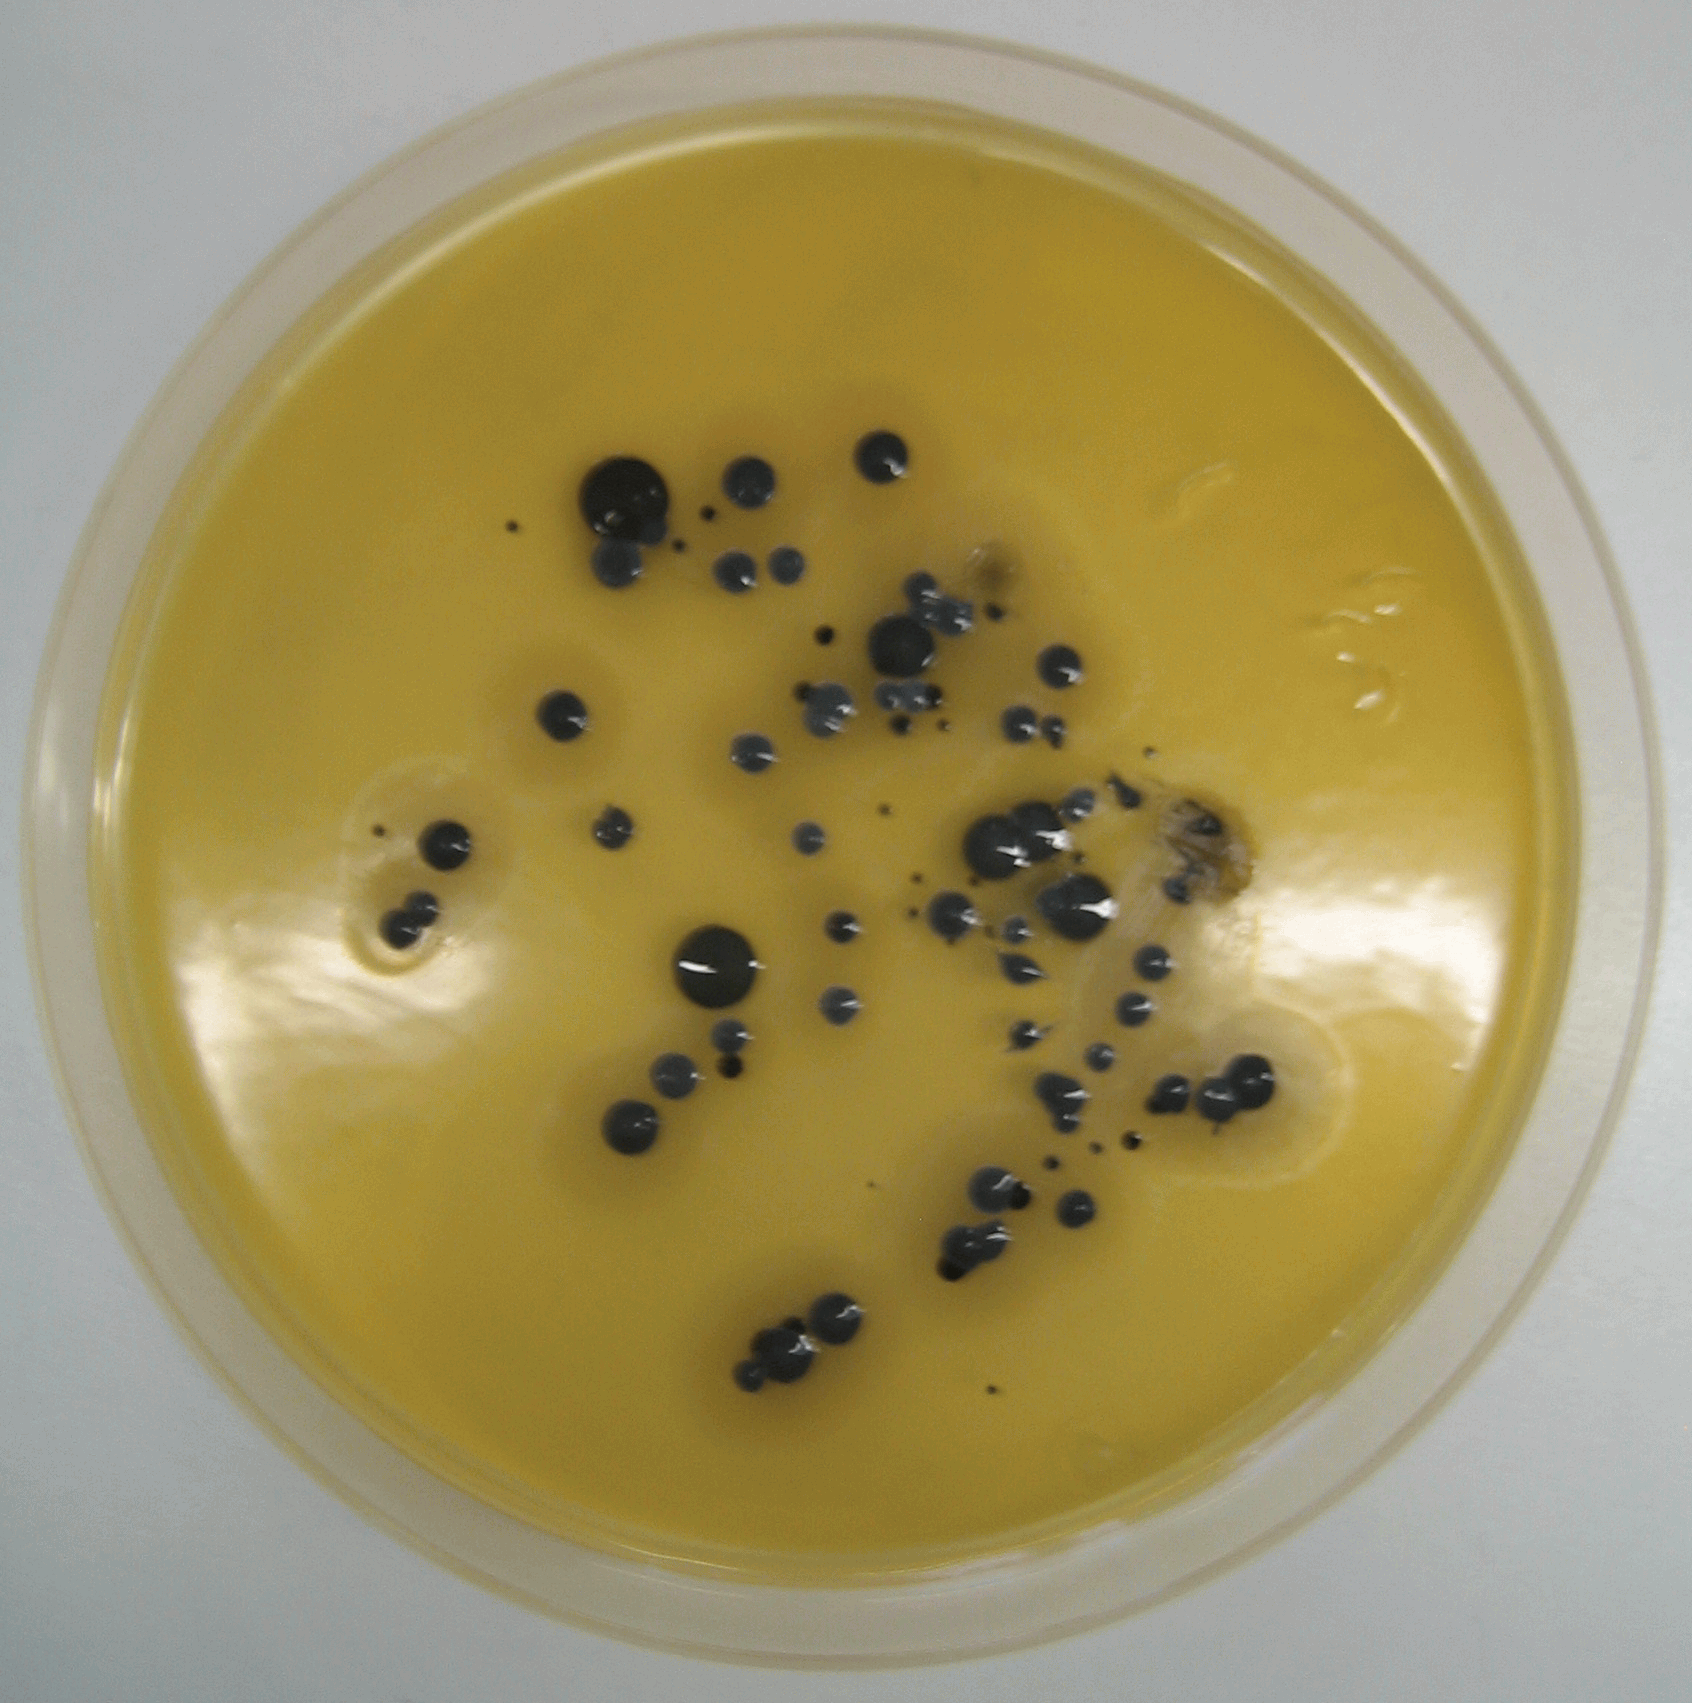 Staphylococcus aureus золотистый стафилококк. S. aureus золотистый стафилококк. Агар Байрд Паркера. Стафилококк на Байрд Паркера. Стафилококк золотистый Staphylococcus aureus.